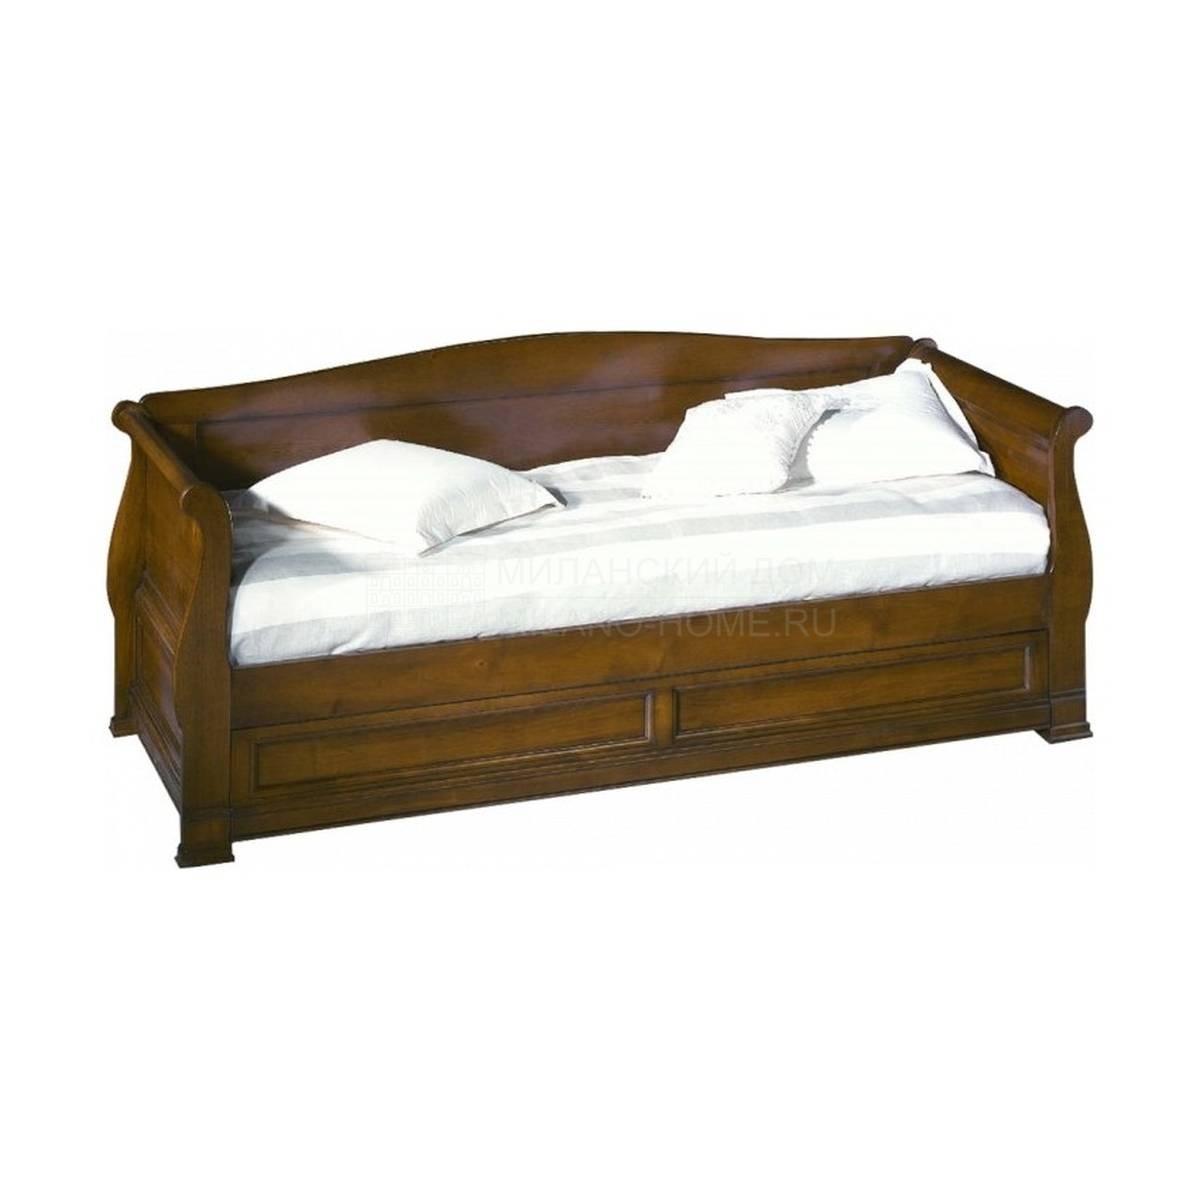 Кровать с деревянным изголовьем Heritage/23120 из Франции фабрики LABARERE